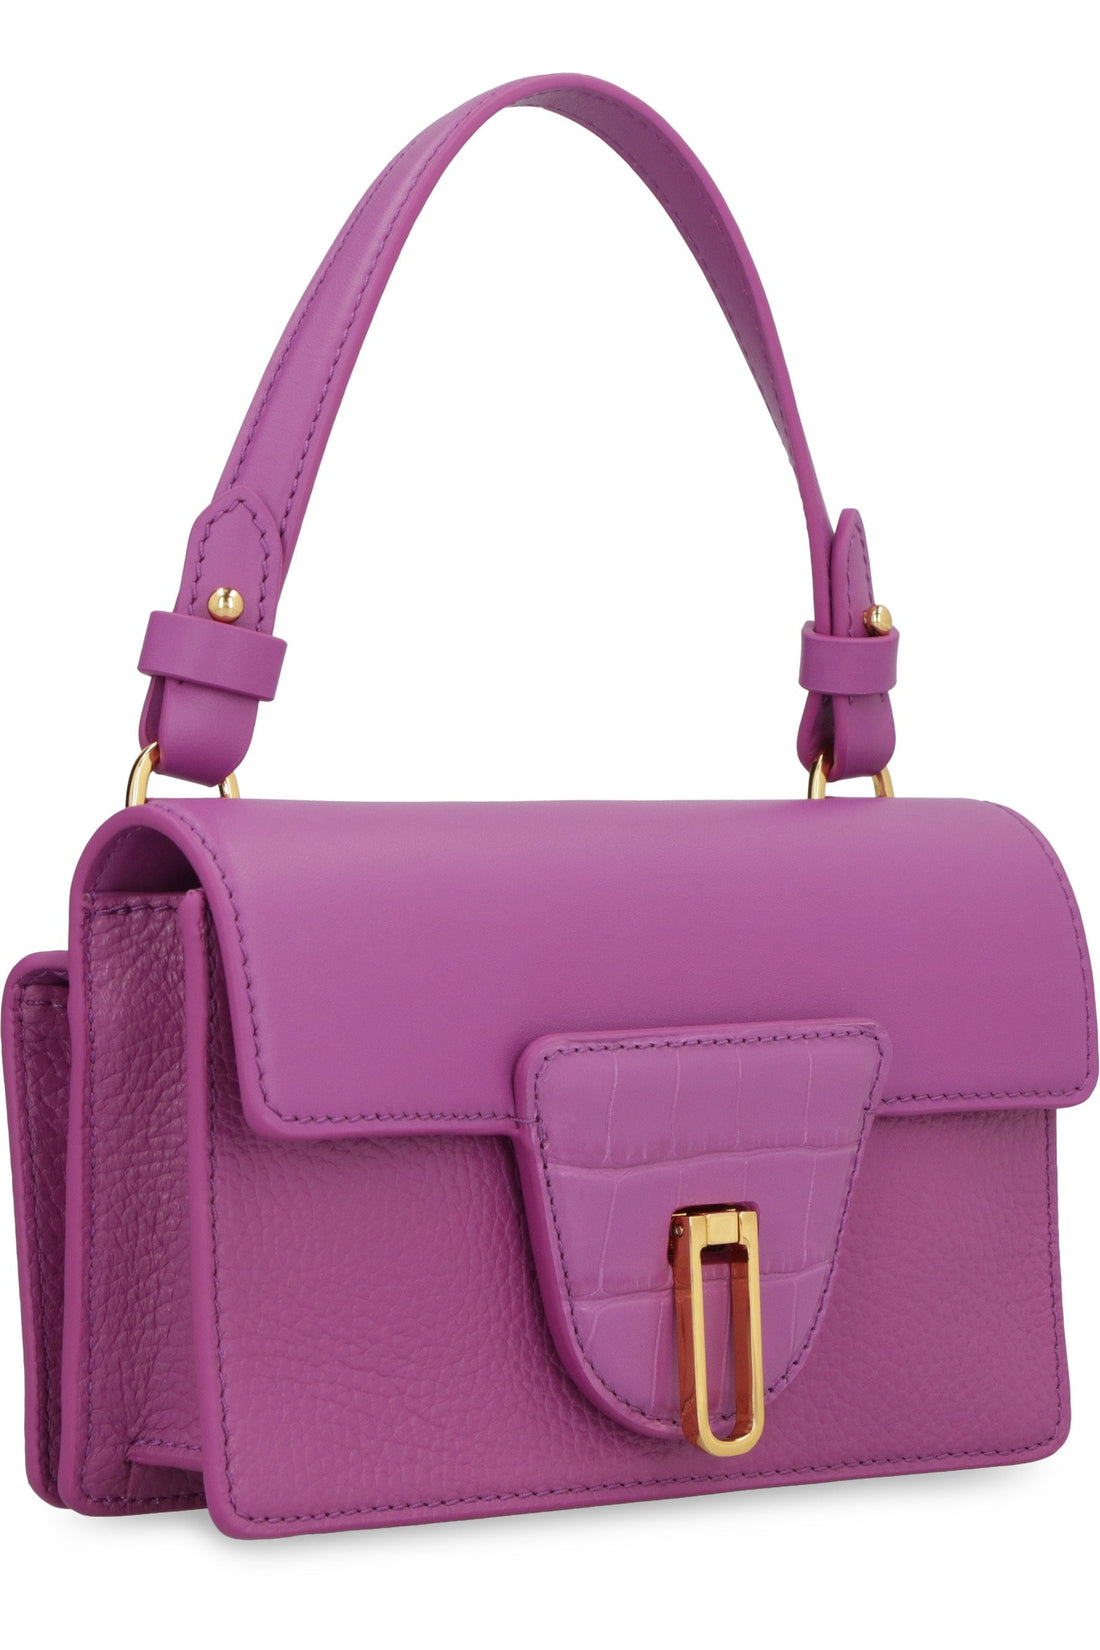 Coccinelle-OUTLET-SALE-Nico leather handbag-ARCHIVIST